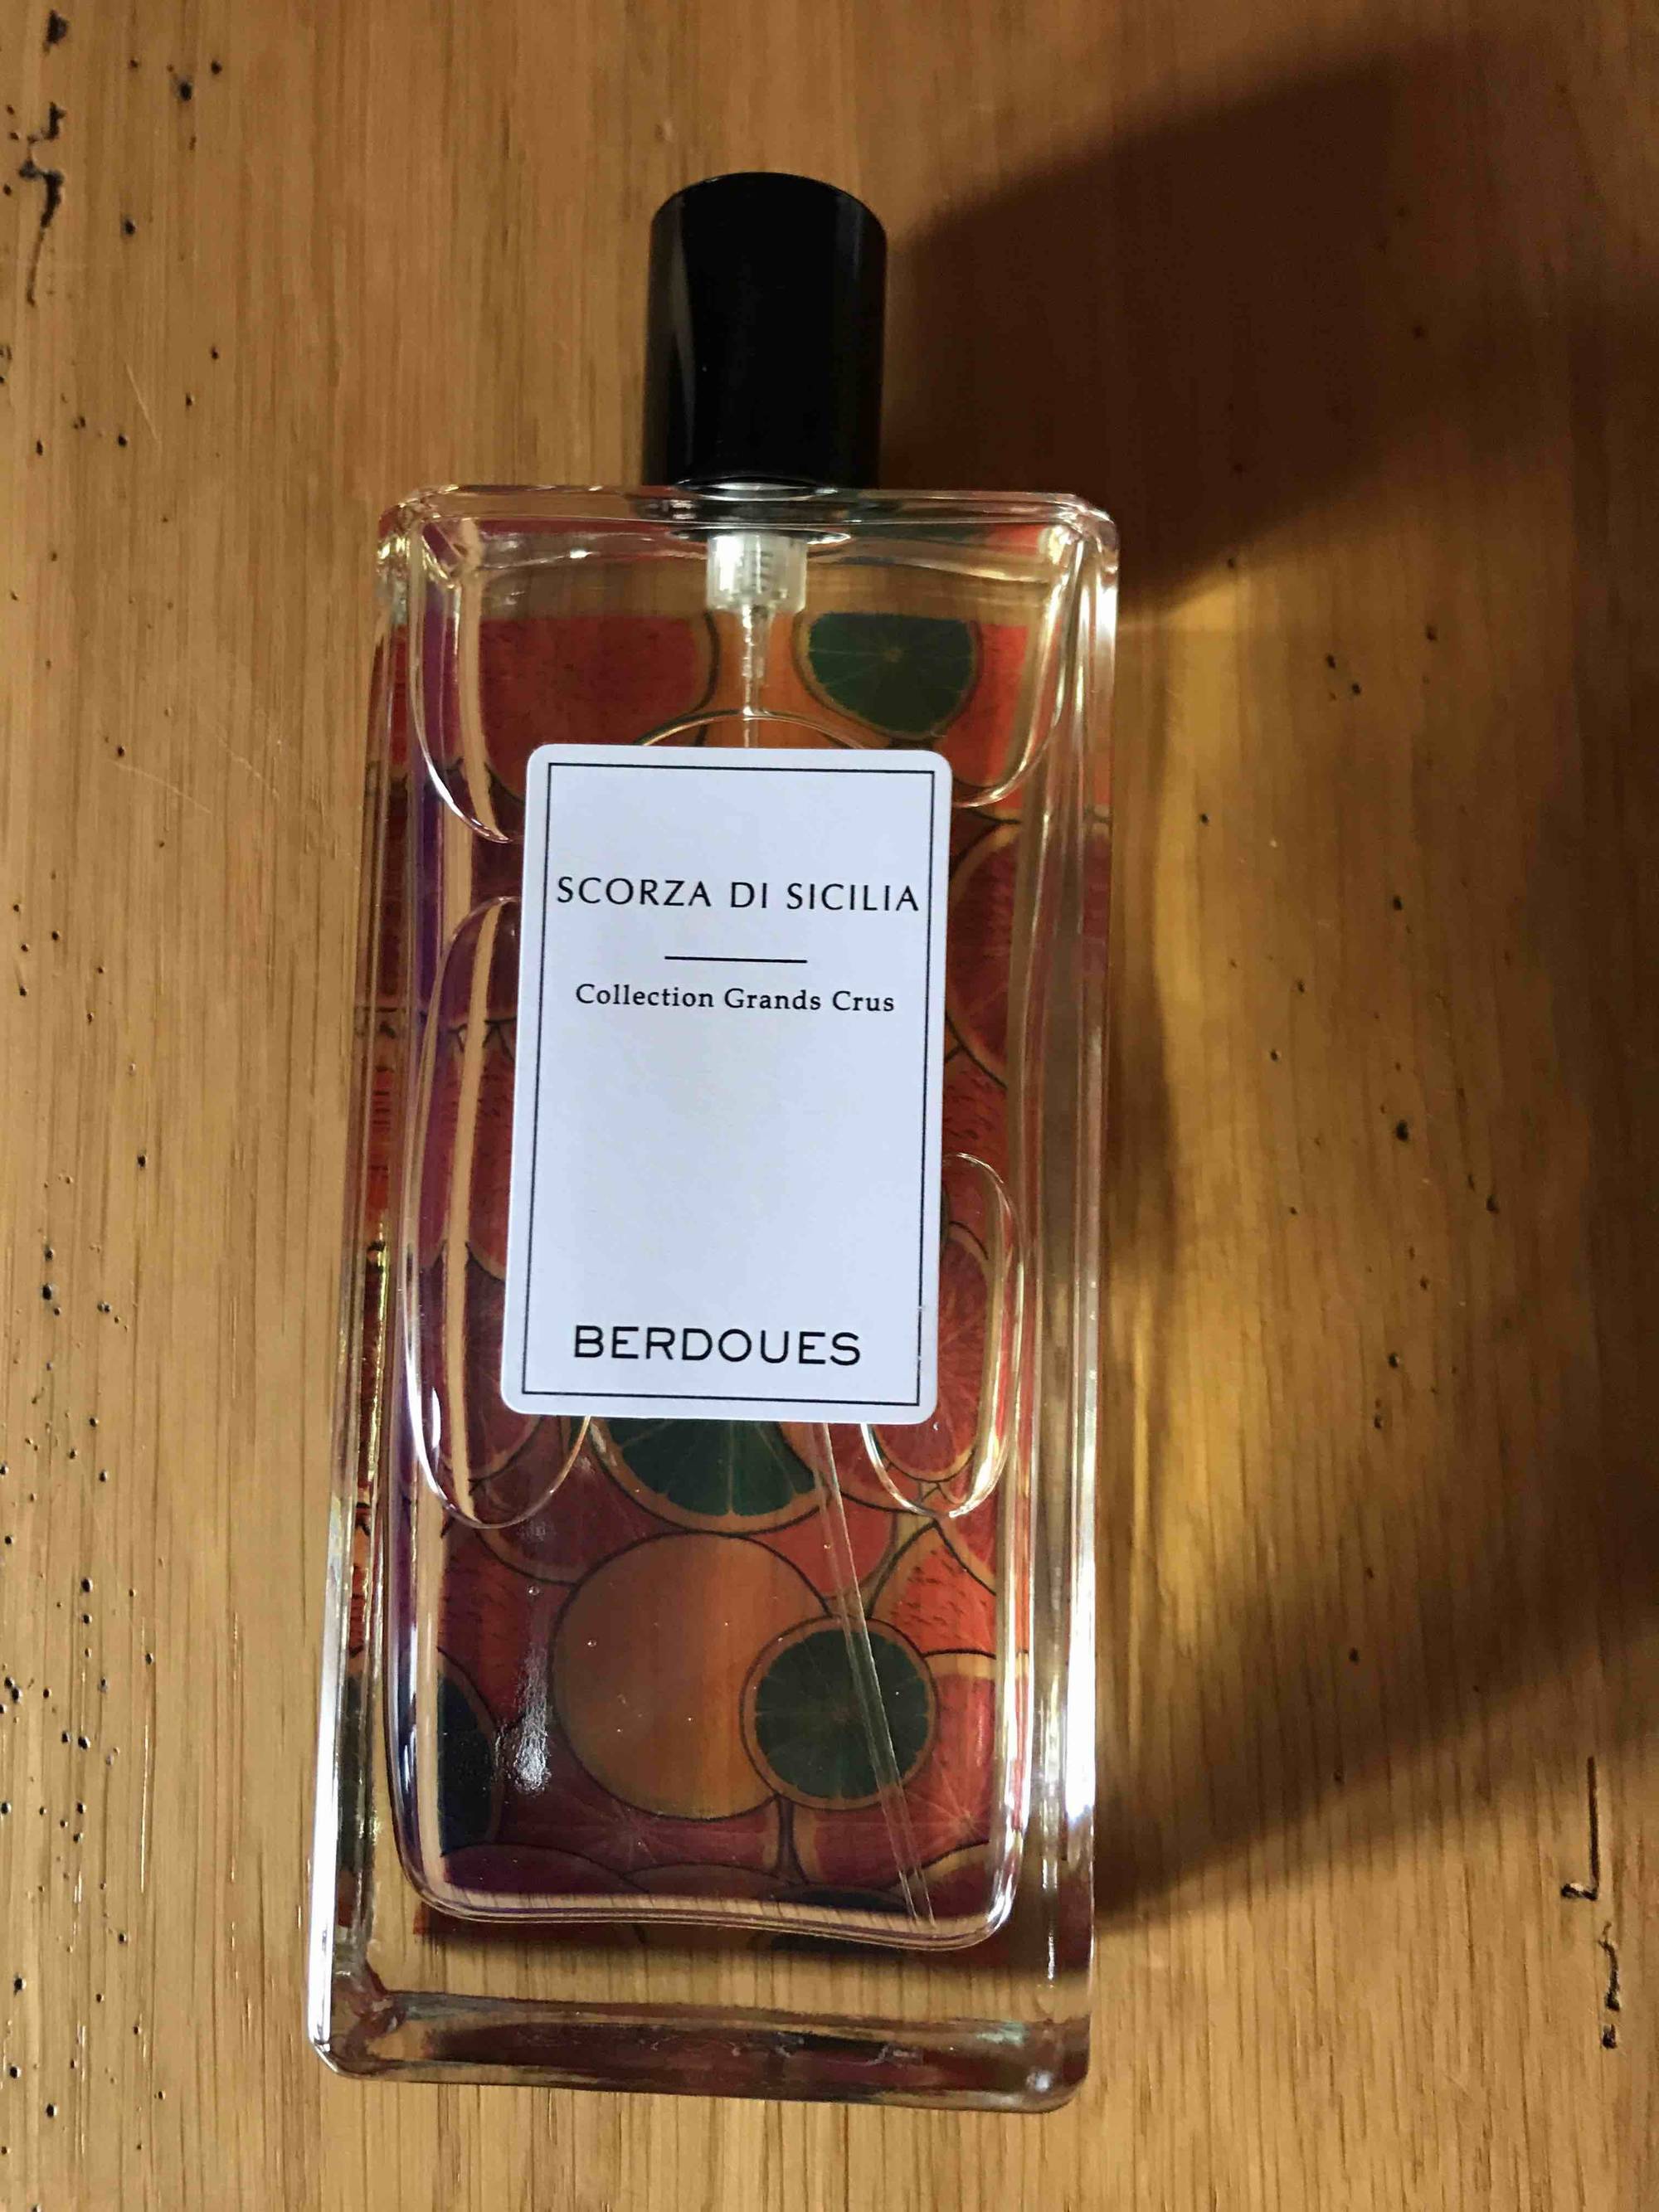 BERDOUES - Scorza di Sicilia collection grands crus - Eau de parfum 